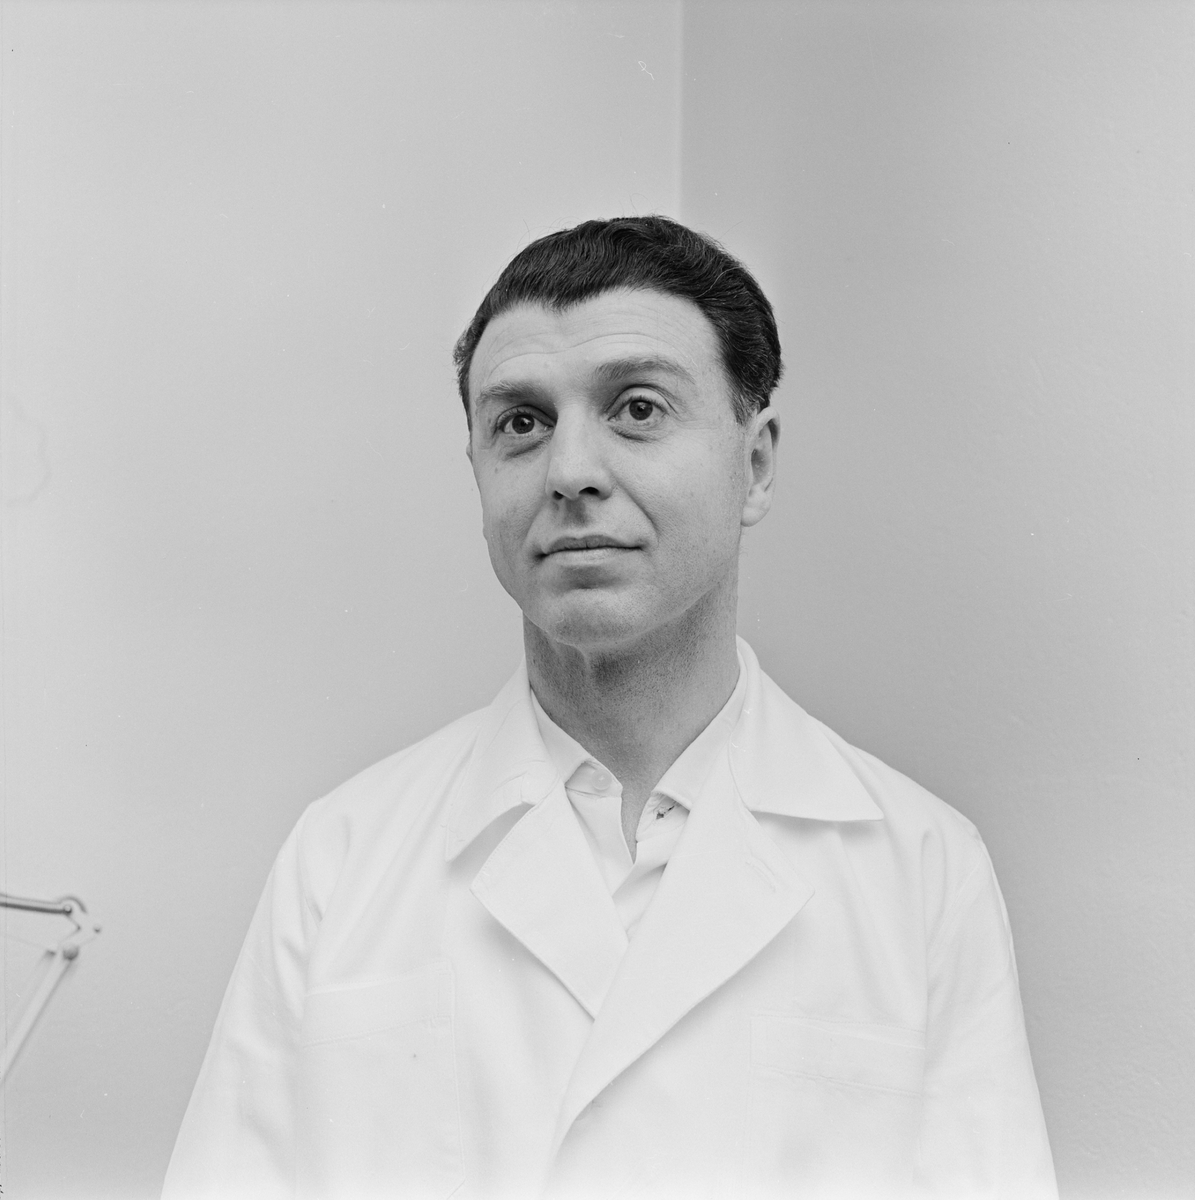 Akademiska sjukhuset, läkare som utförde operation på siamestvillingarna, doktor Basil Finer, Uppsala, mars 1965